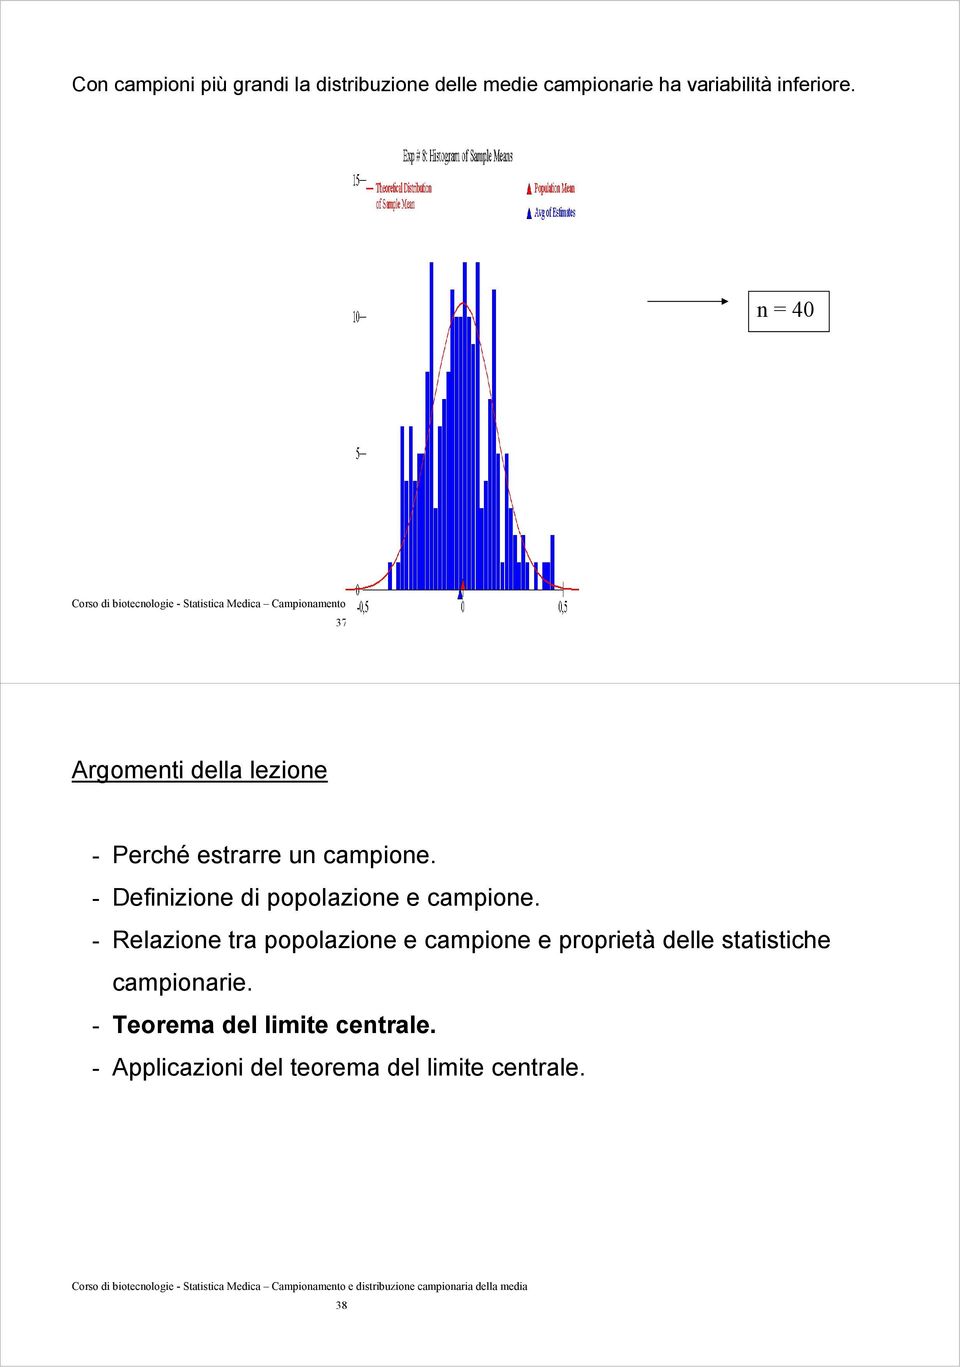 popolazione e campione - Relazione tra popolazione e campione e proprietà delle